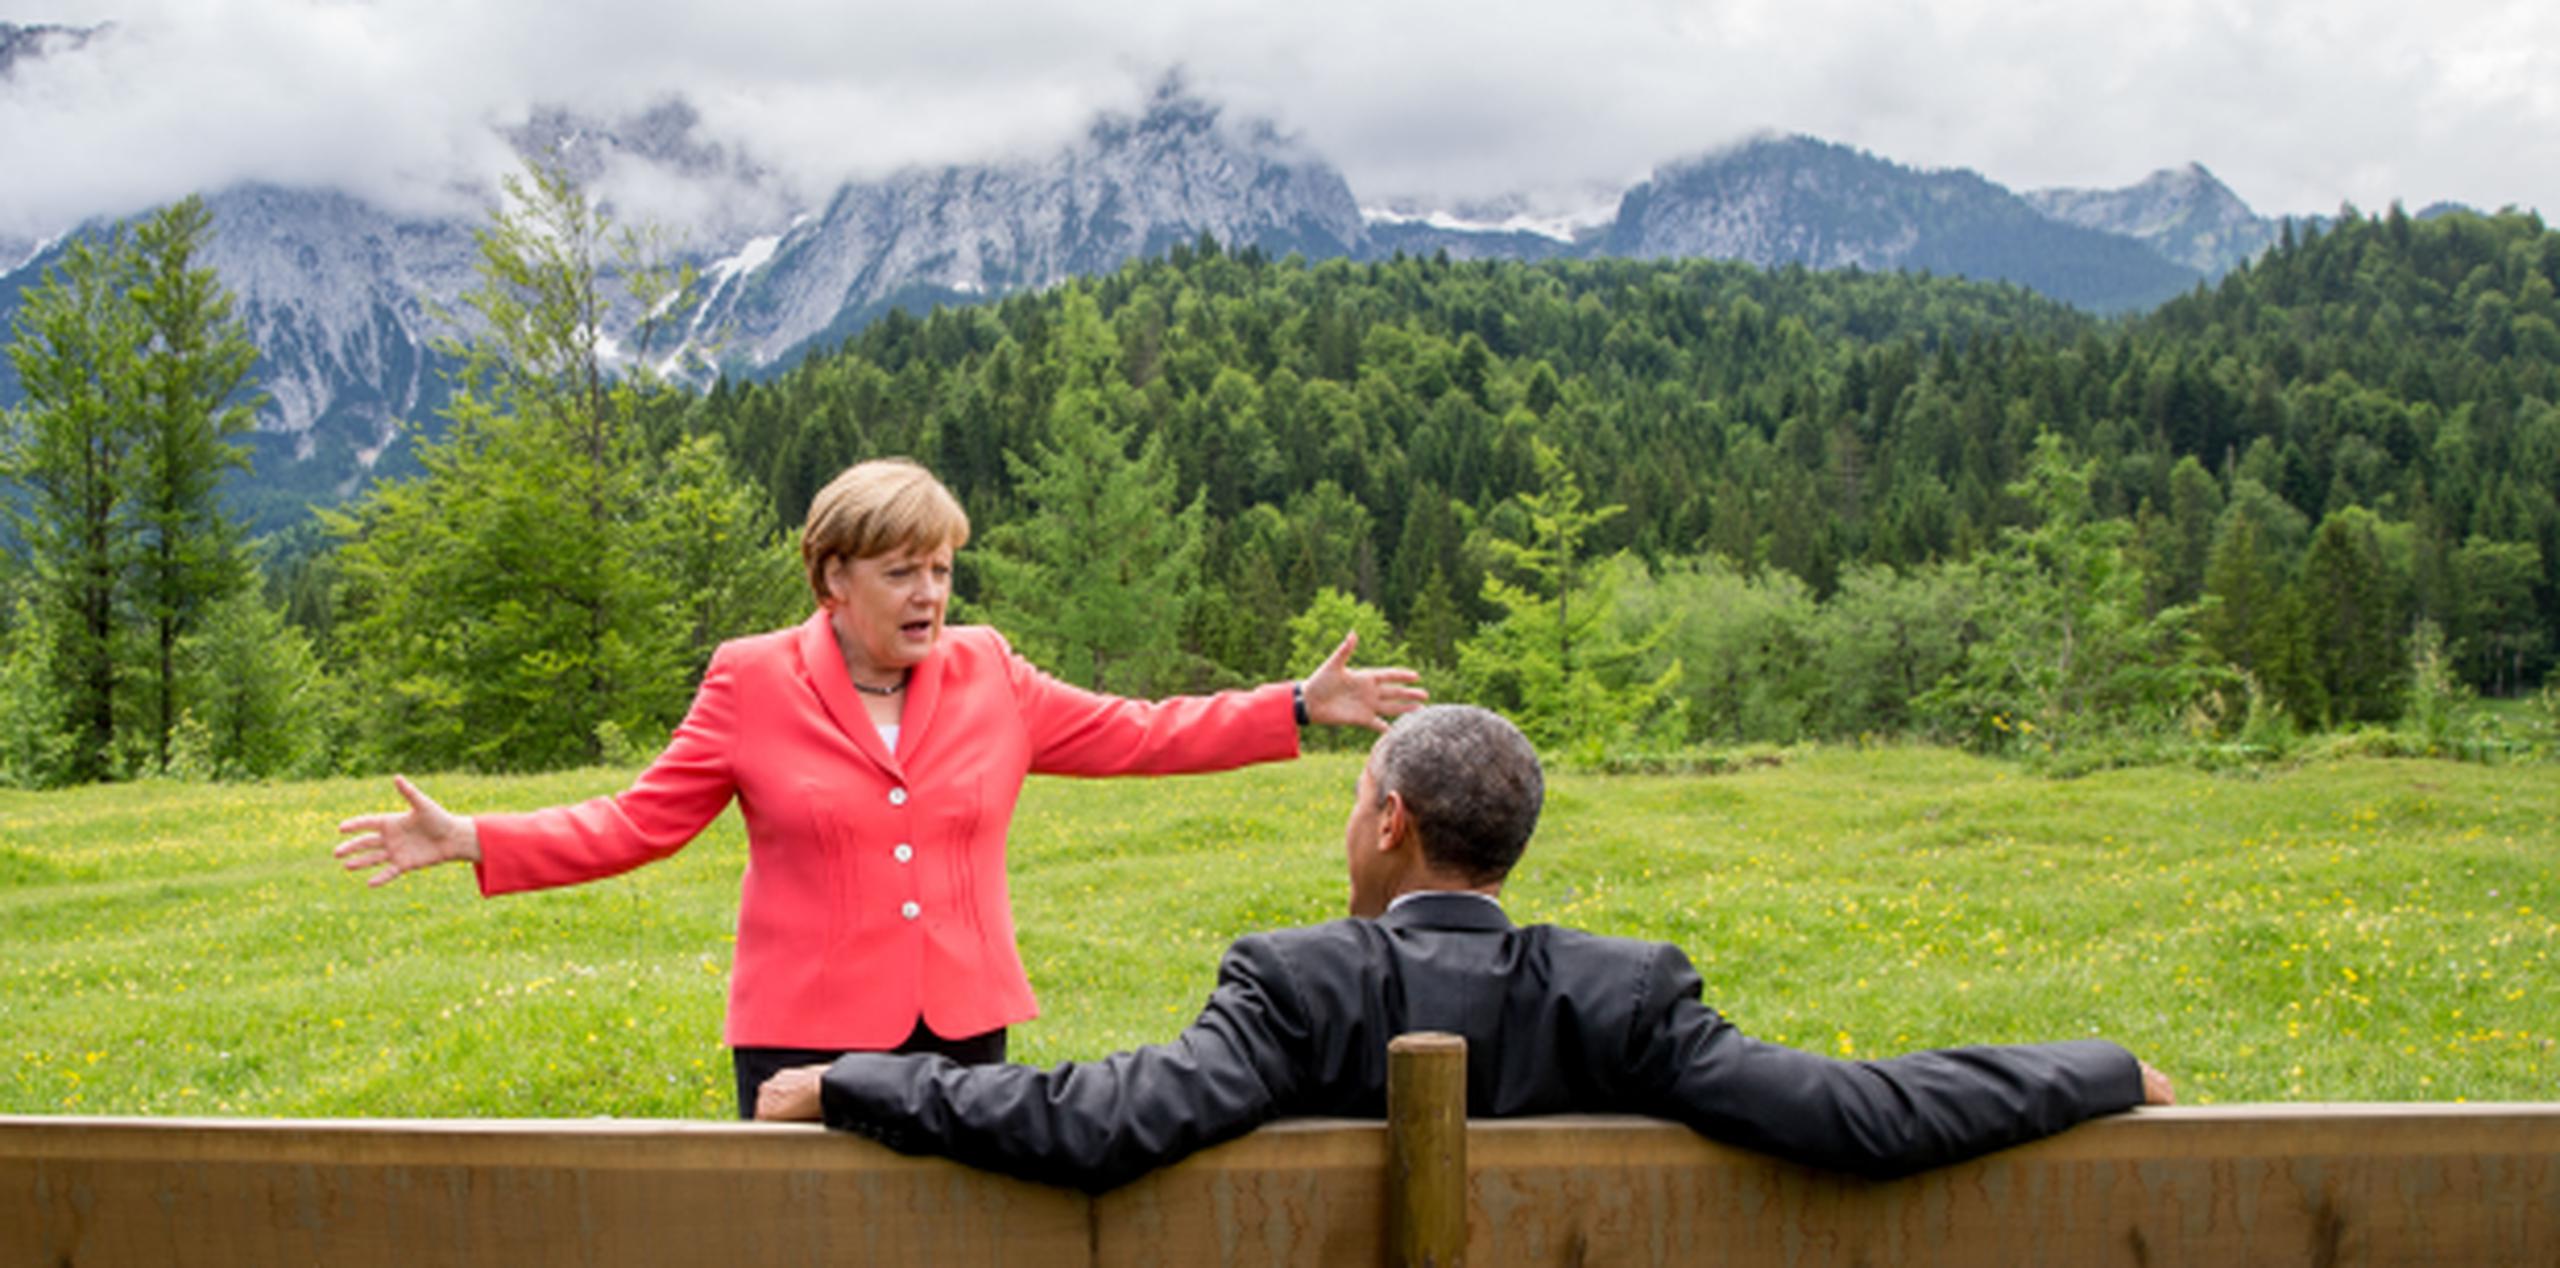 La canciller de Alemania, Angela Merkel, conversa animadamente con el presidente Barack Obama, en un aparte de la reunión en Alemania. (AP)